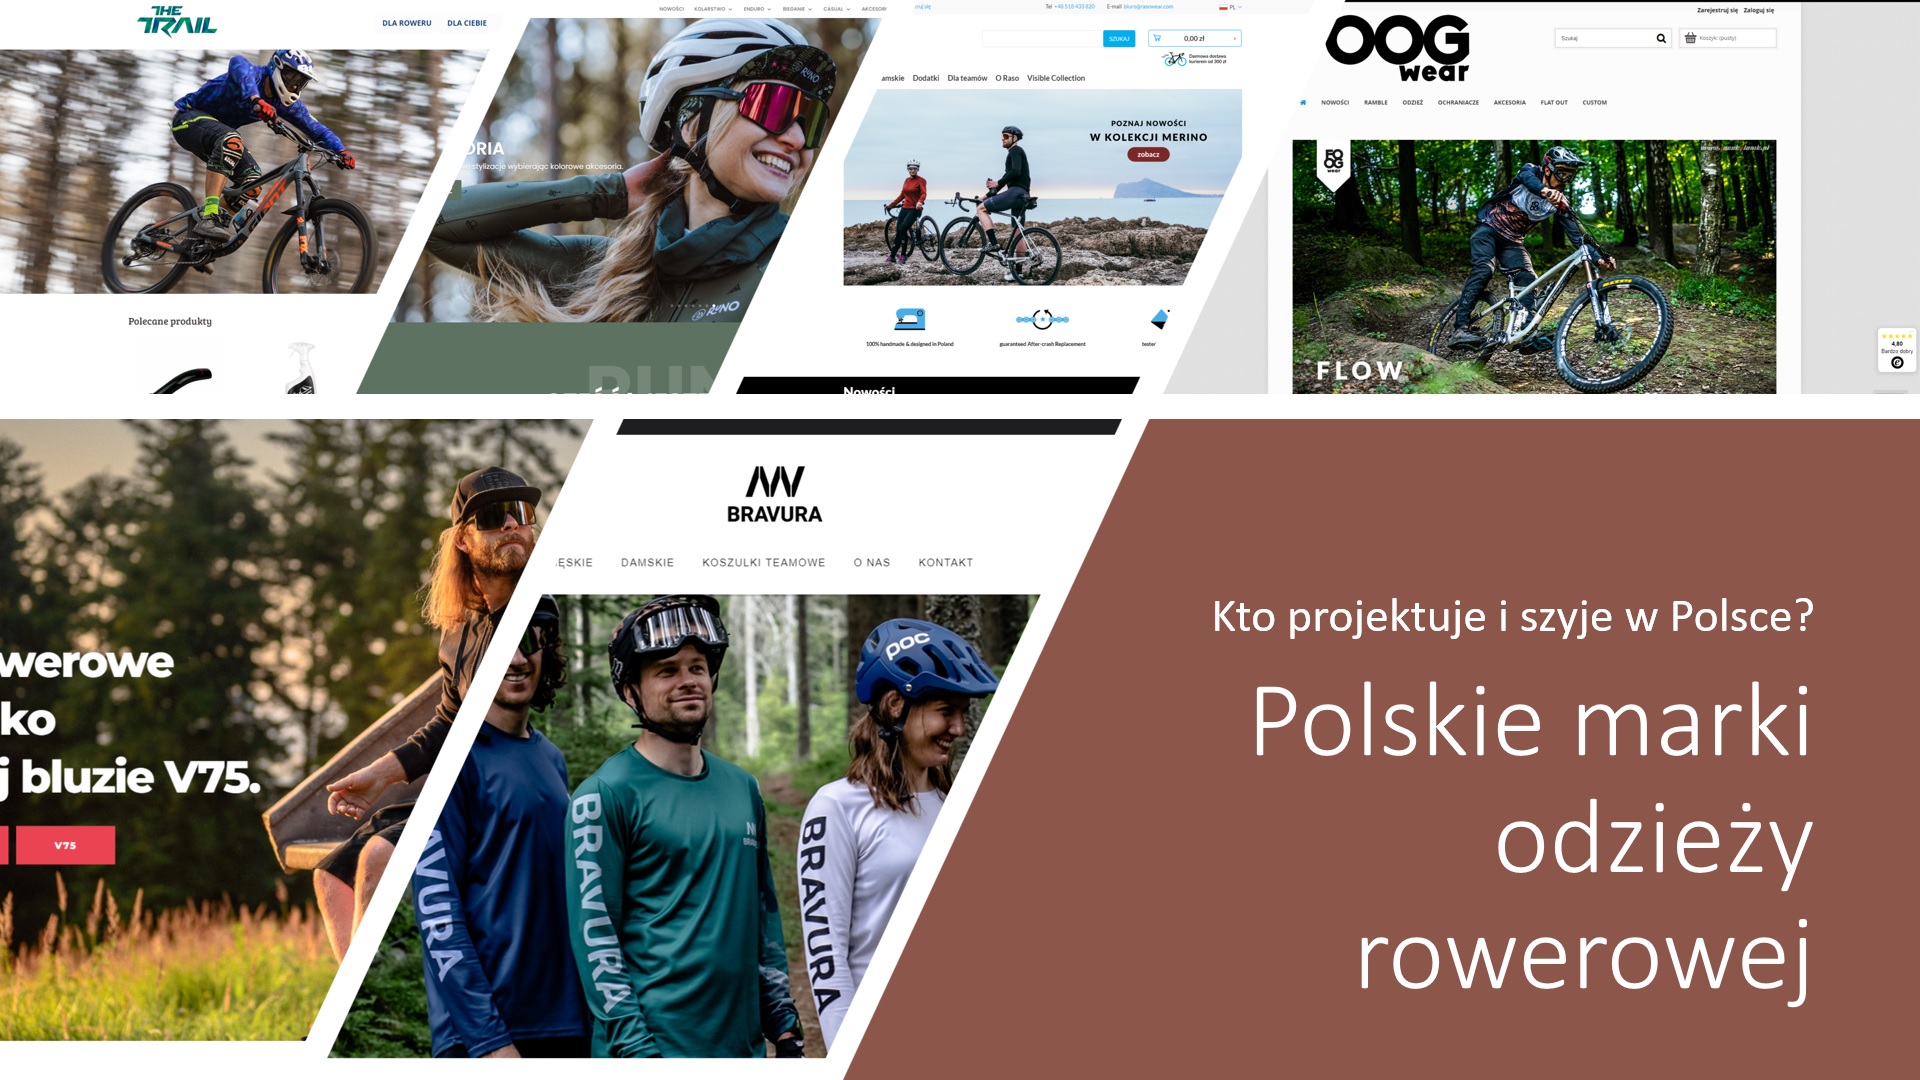 Polska odzież rowerowa - marki projektujące i produkujące ubrania w Polsce